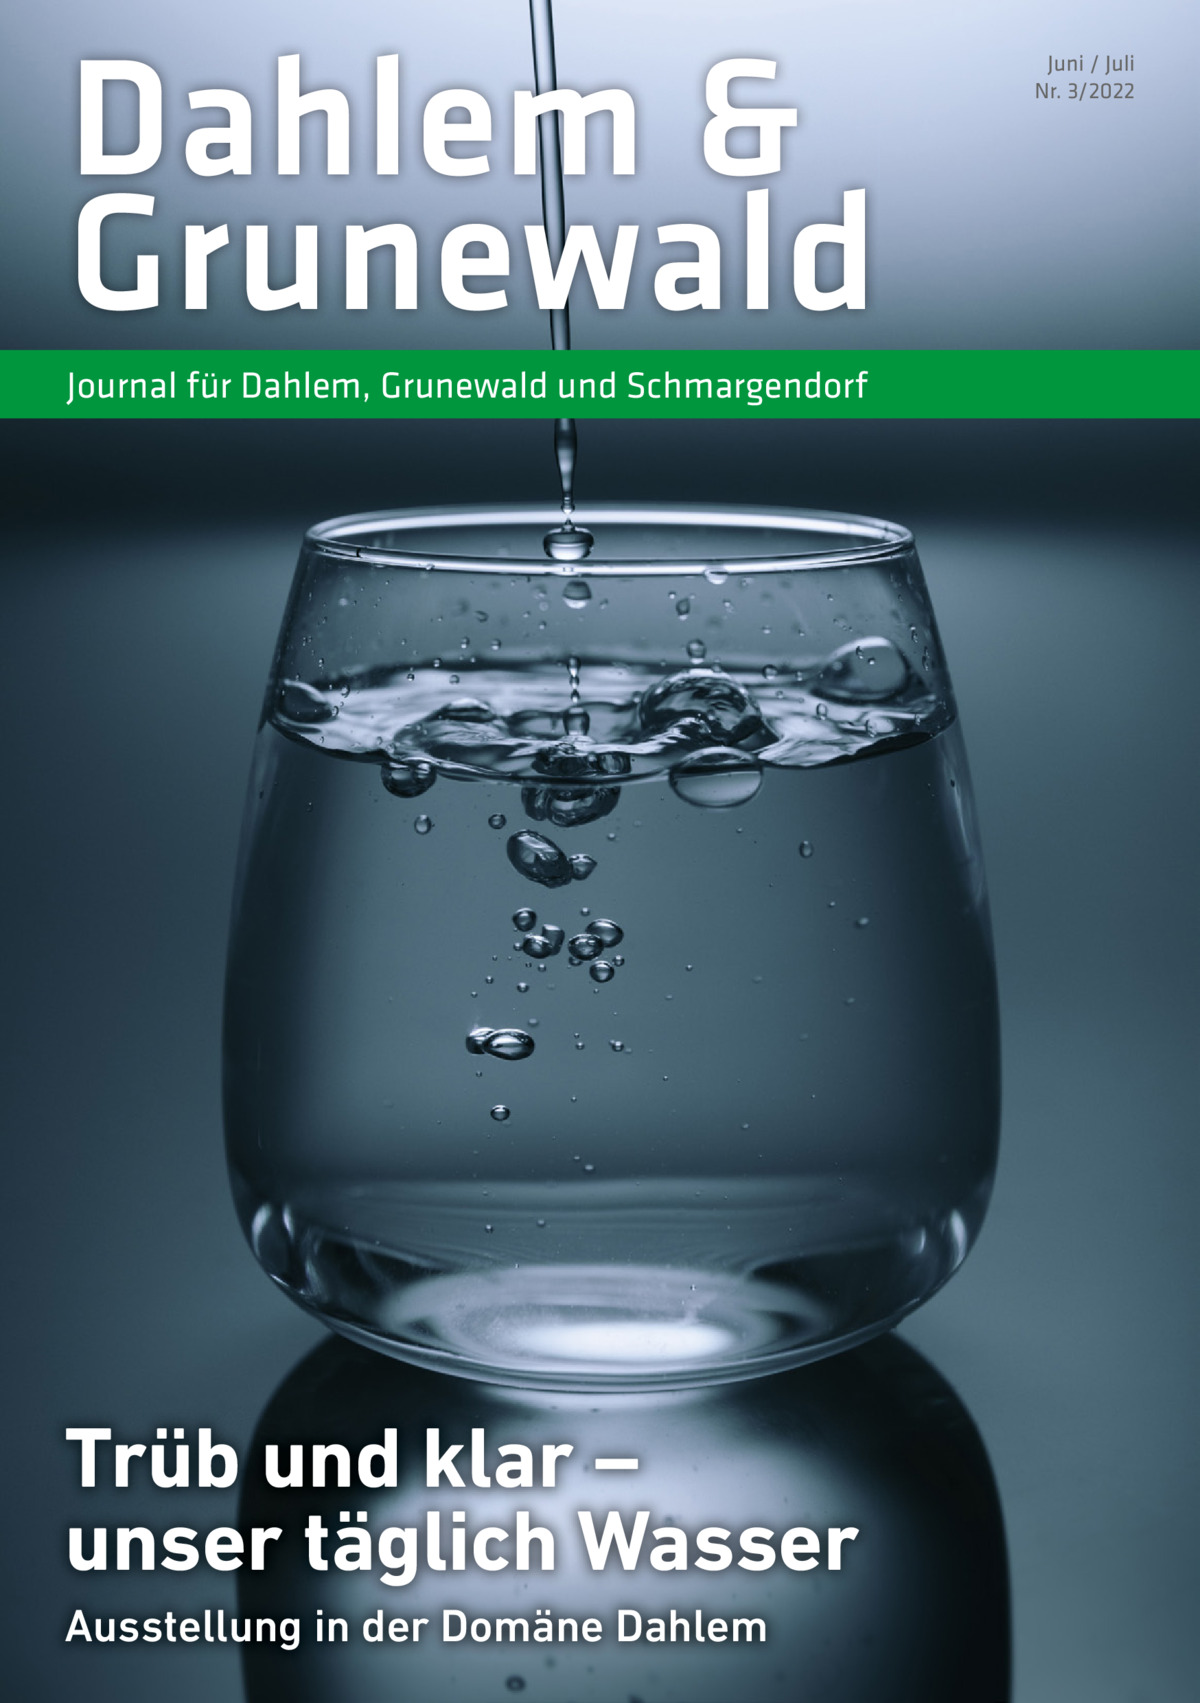 Dahlem & Grunewald Journal für Dahlem, Grunewald und Schmargendorf  Trüb und klar – unser täglich Wasser Ausstellung in der Domäne Dahlem  Juni / Juli Nr. 3/2022